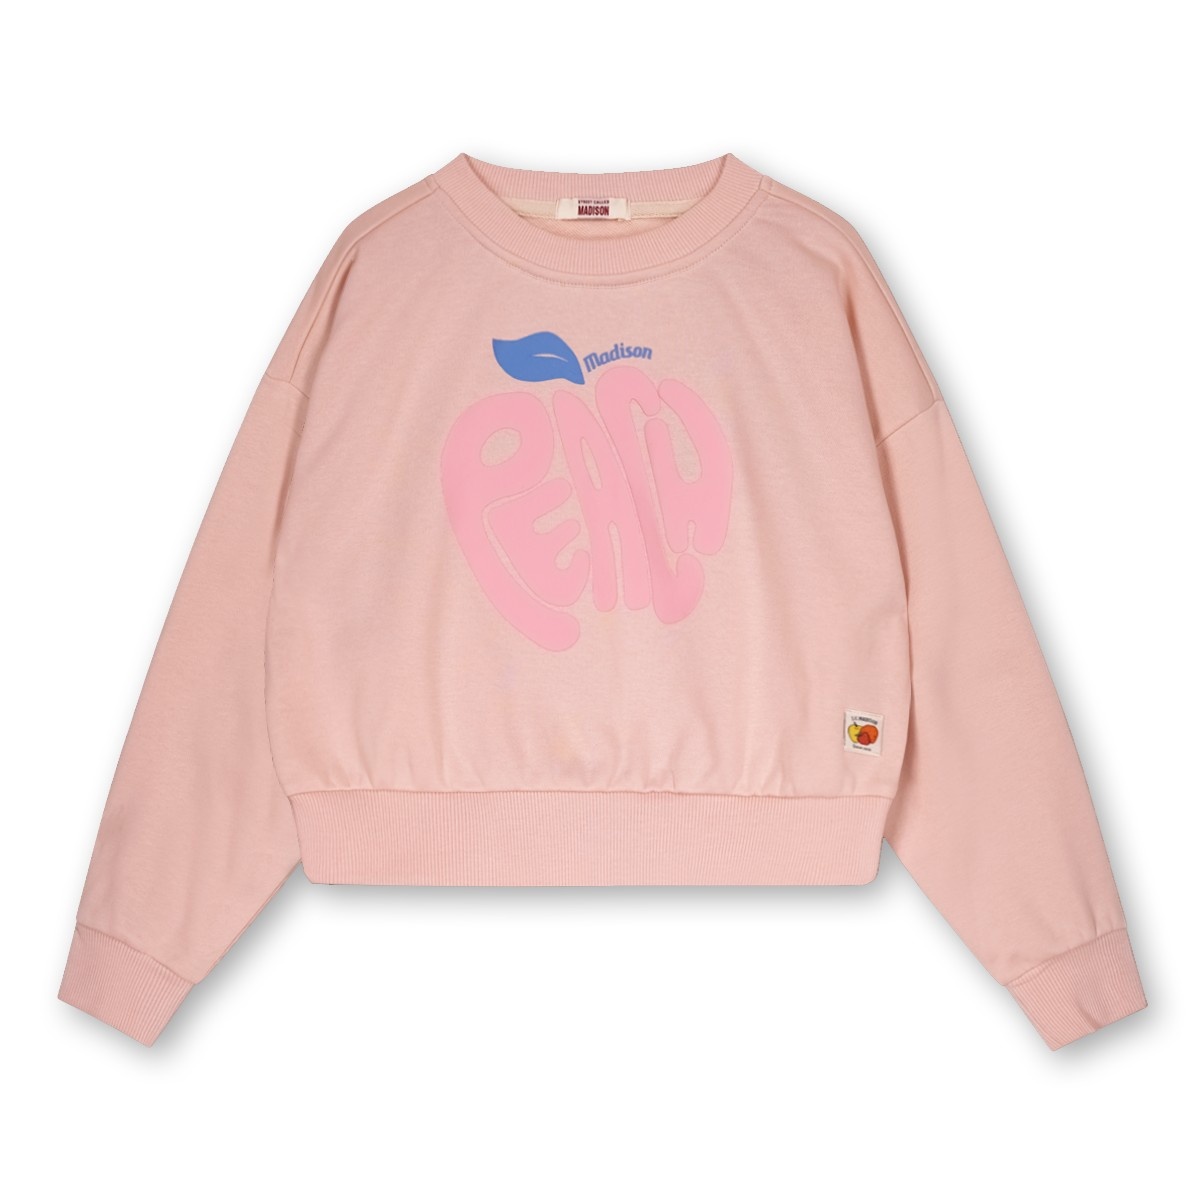 Street called Madison Meisjes sweater - Keystone - Zacht roze